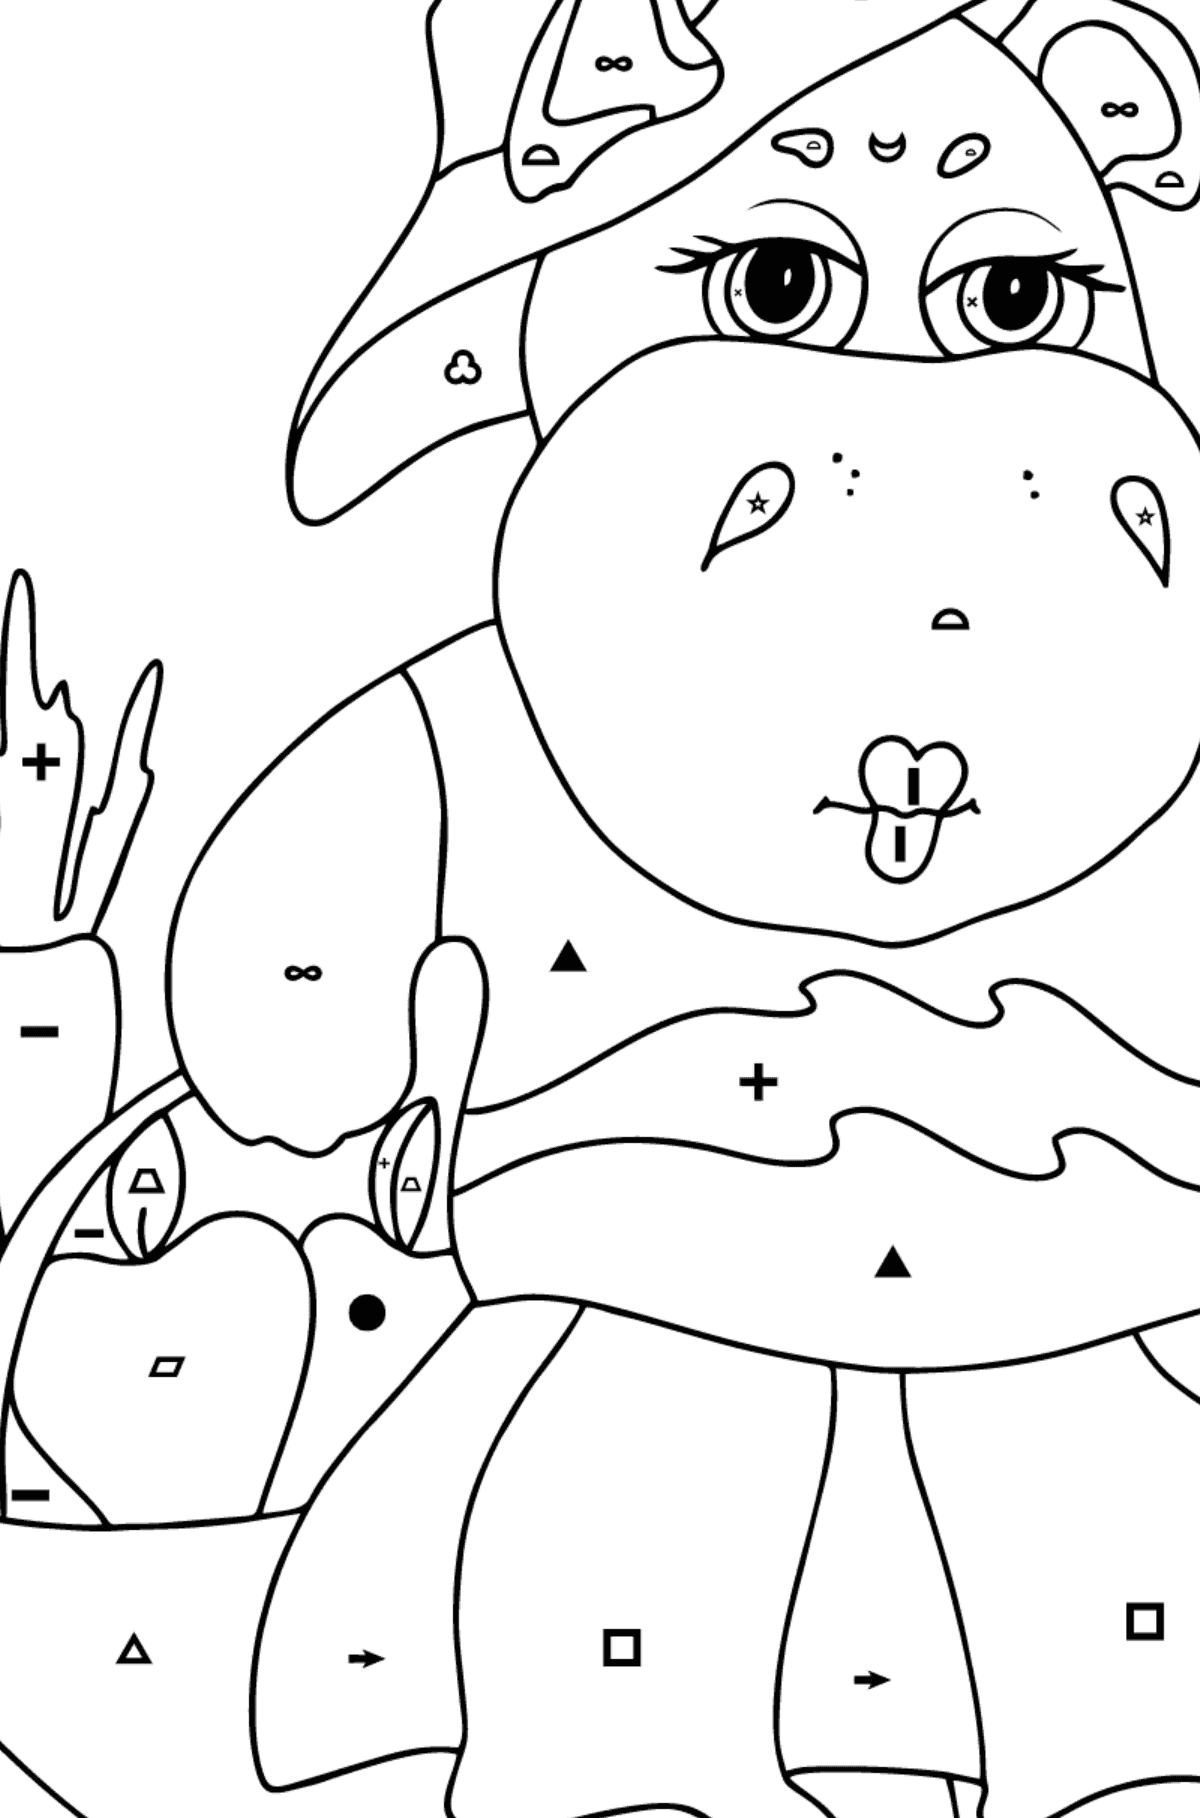 Kolorowanka Troskliwy hipopotam - Kolorowanie według symboli i figur geometrycznych dla dzieci